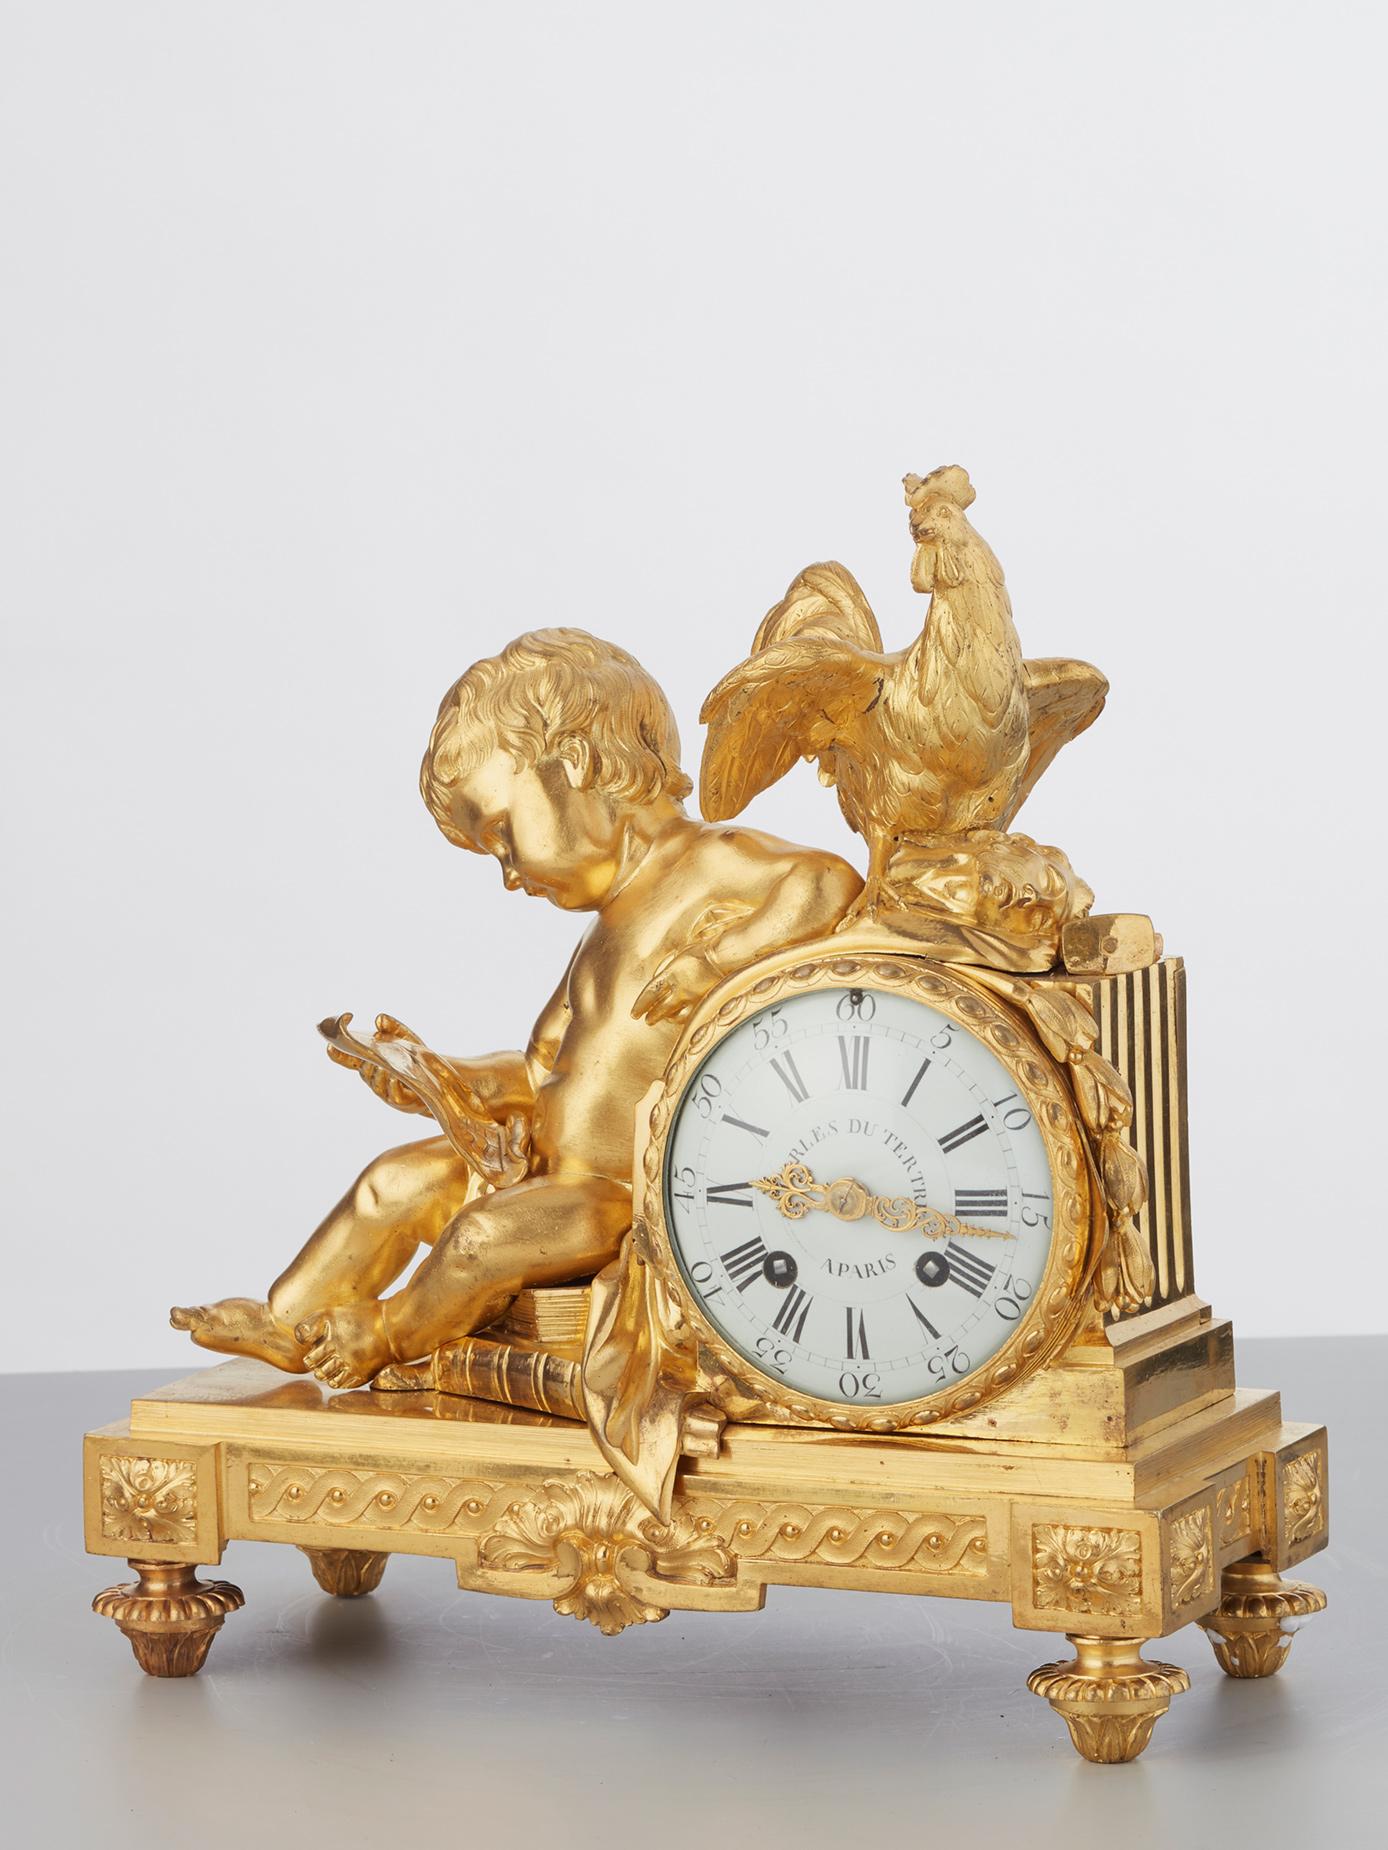 Charles Du Tetre à Paris . L'un des plus célèbres horlogers parisiens de la seconde moitié du XVIIIe siècle. Maître horloger depuis 1758. Il a livré de nombreuses horloges à la famille royale et à d'autres familles importantes. Le mouvement est